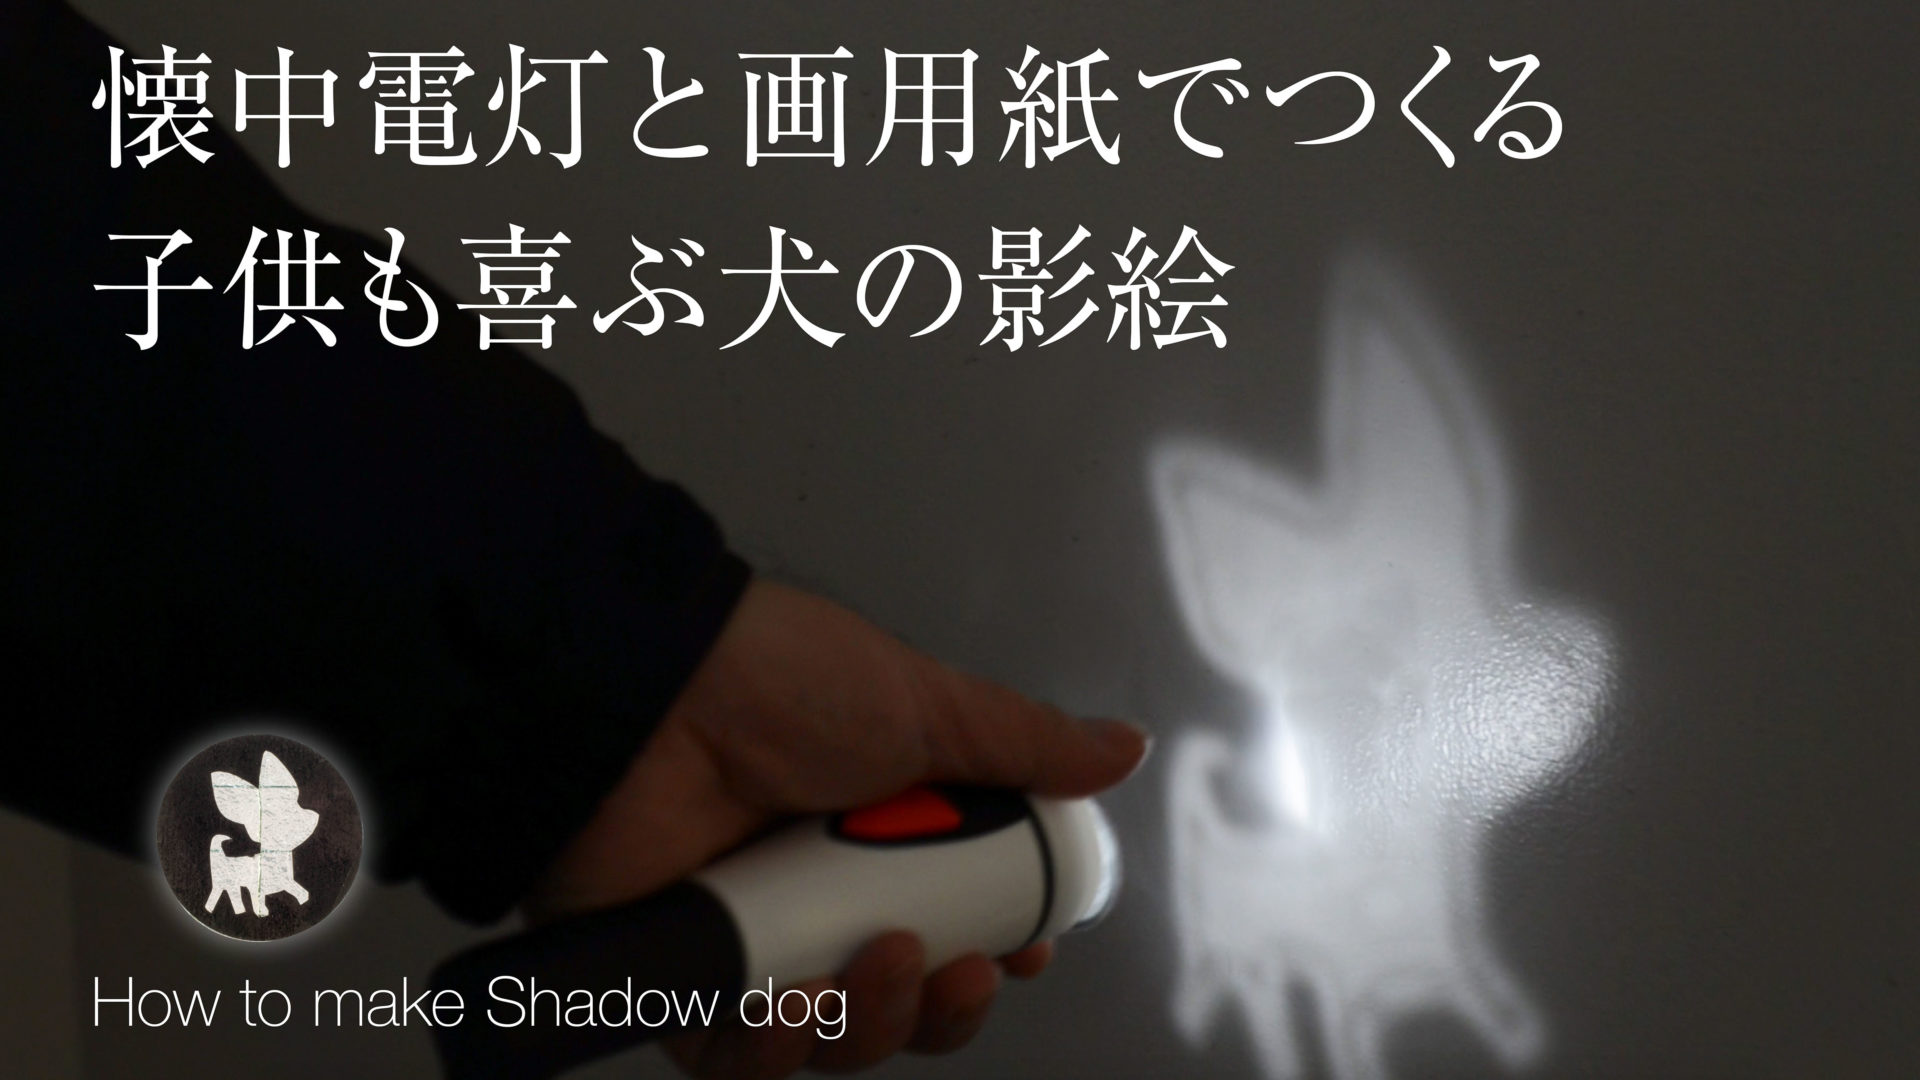 【犬のイラスト】影絵の作り方・ダイソーの懐中電灯と画用紙で影絵遊び・子供とあそぼう